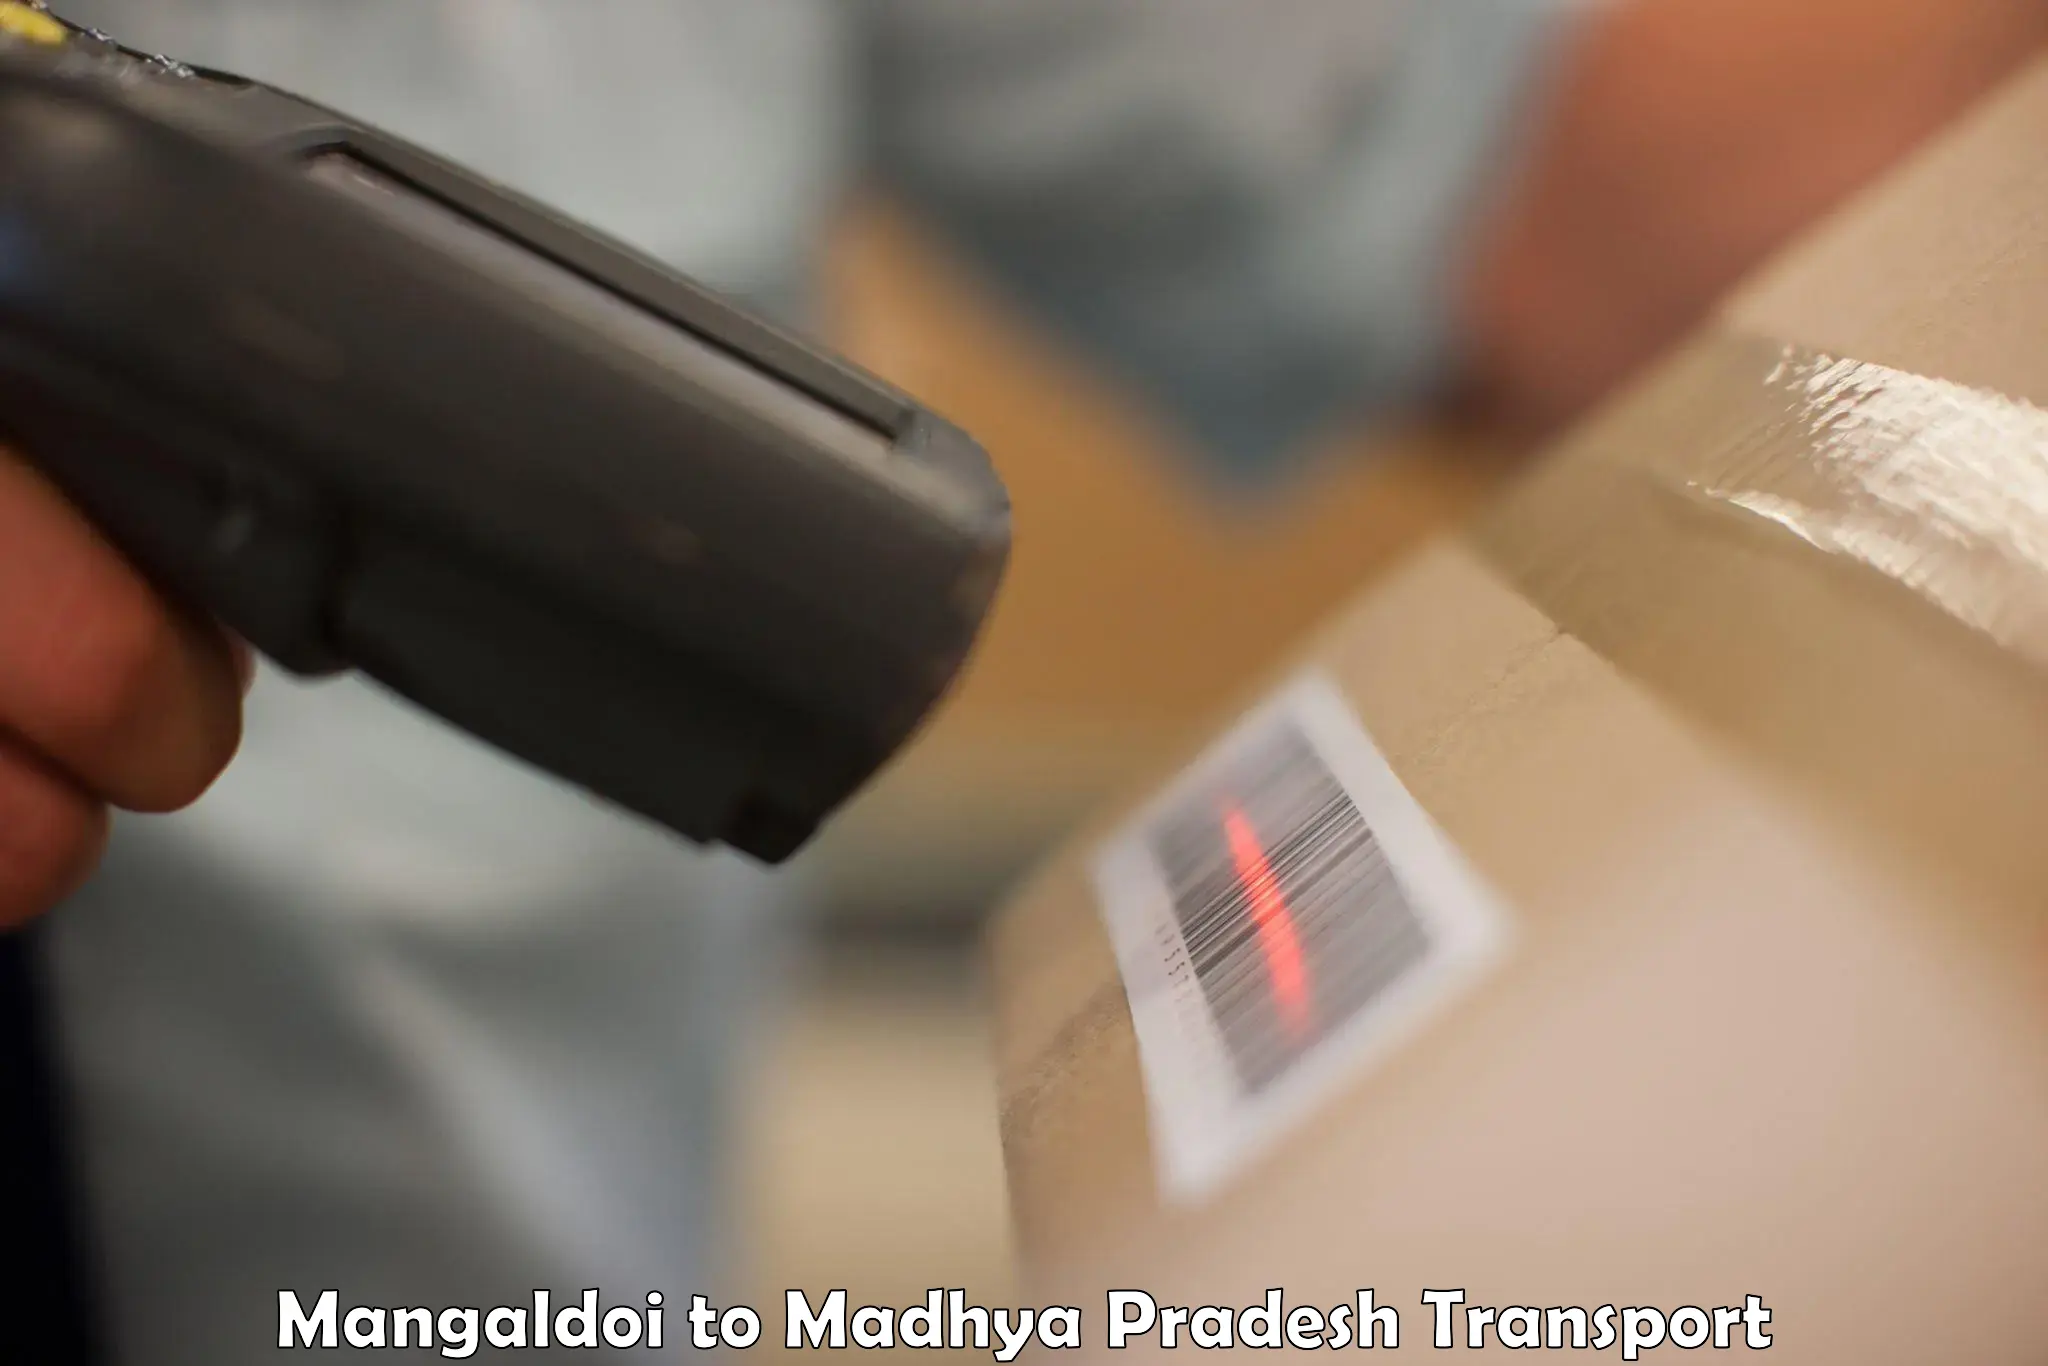 Sending bike to another city Mangaldoi to Madhya Pradesh